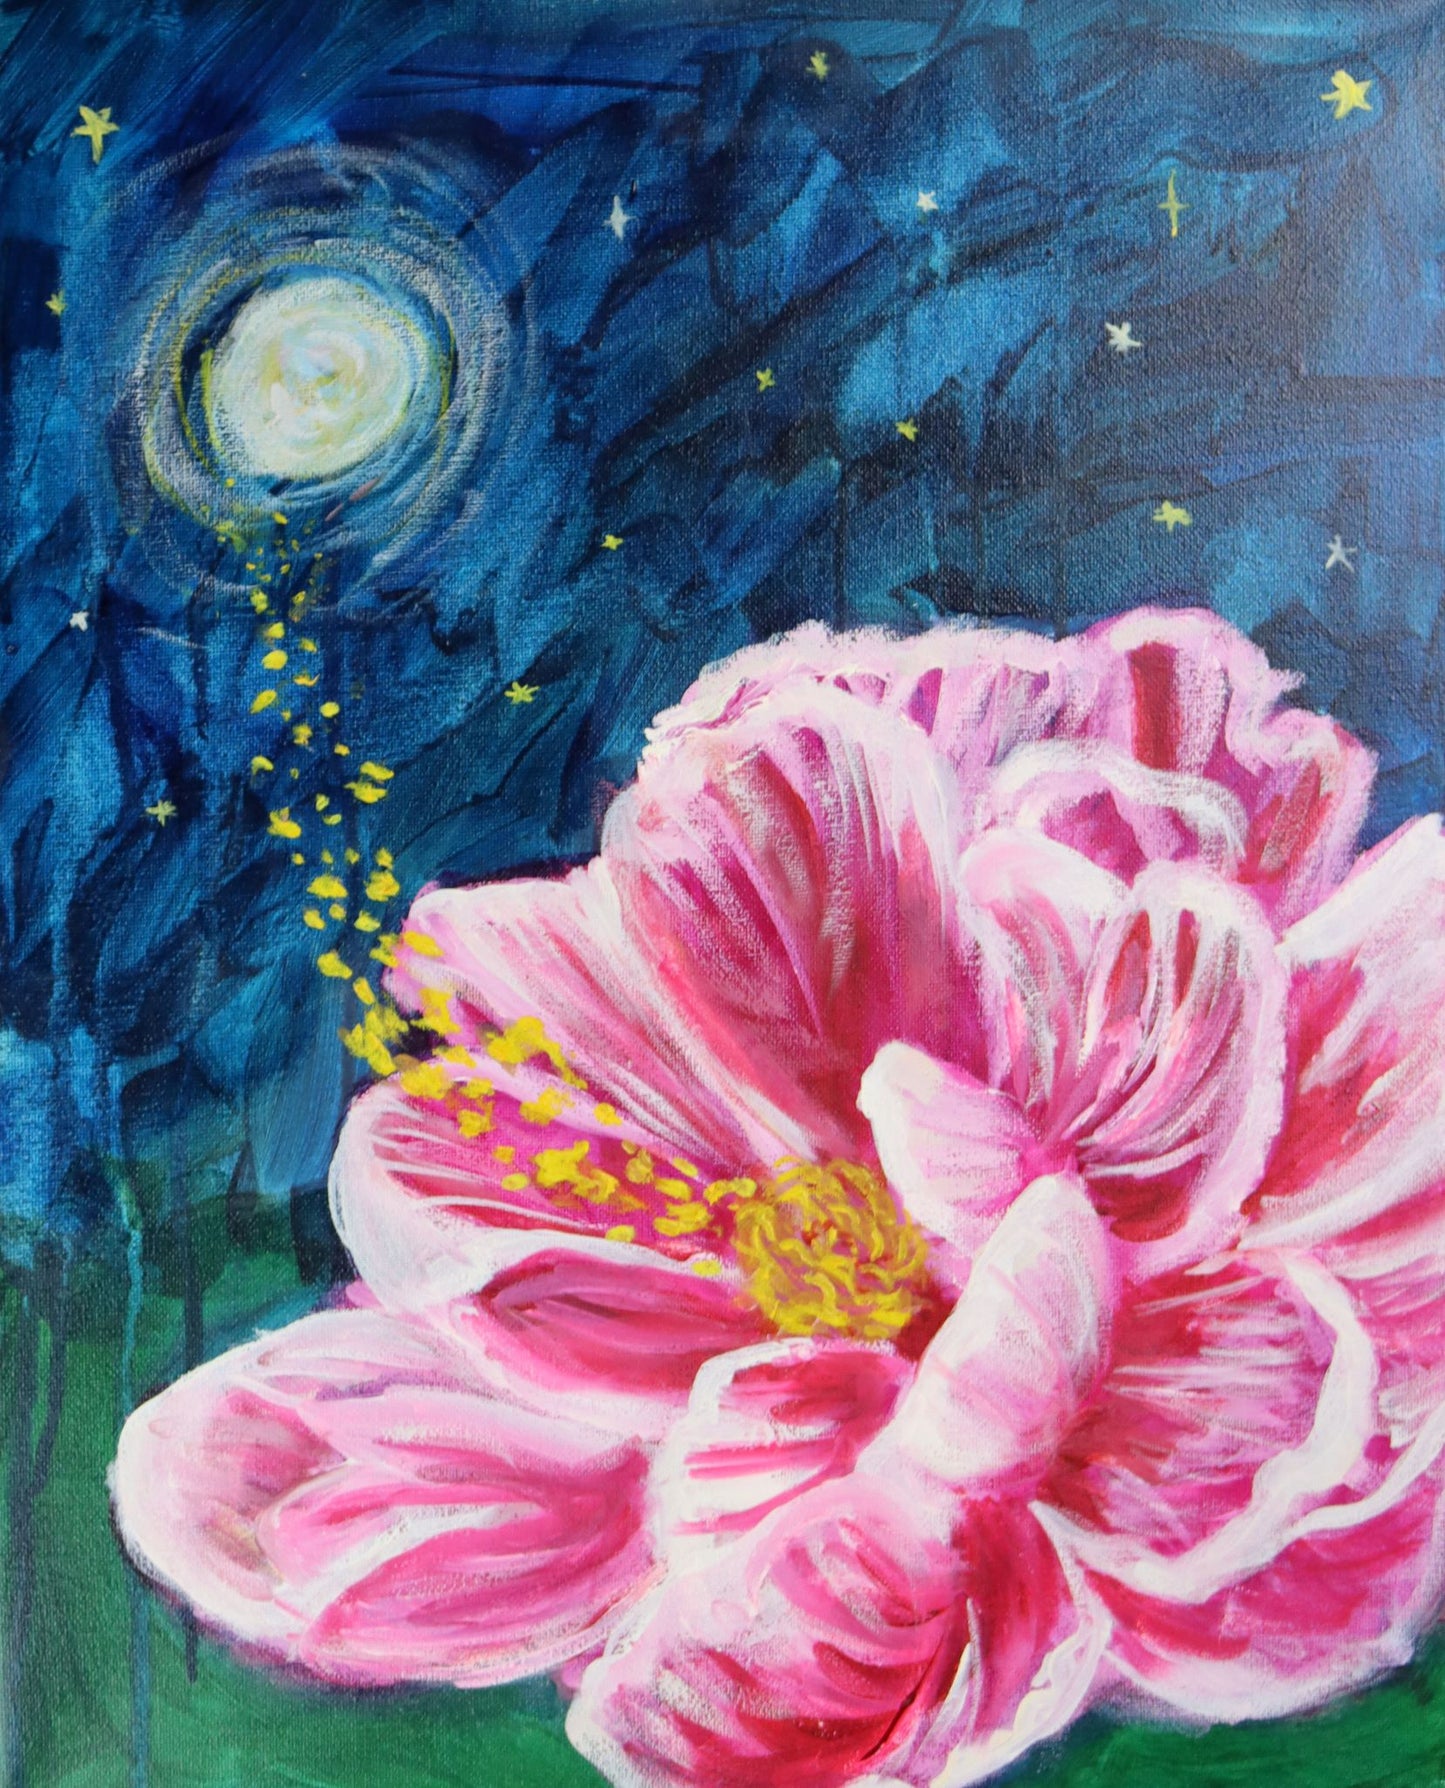 Midnight Flower - Oil - 16x20